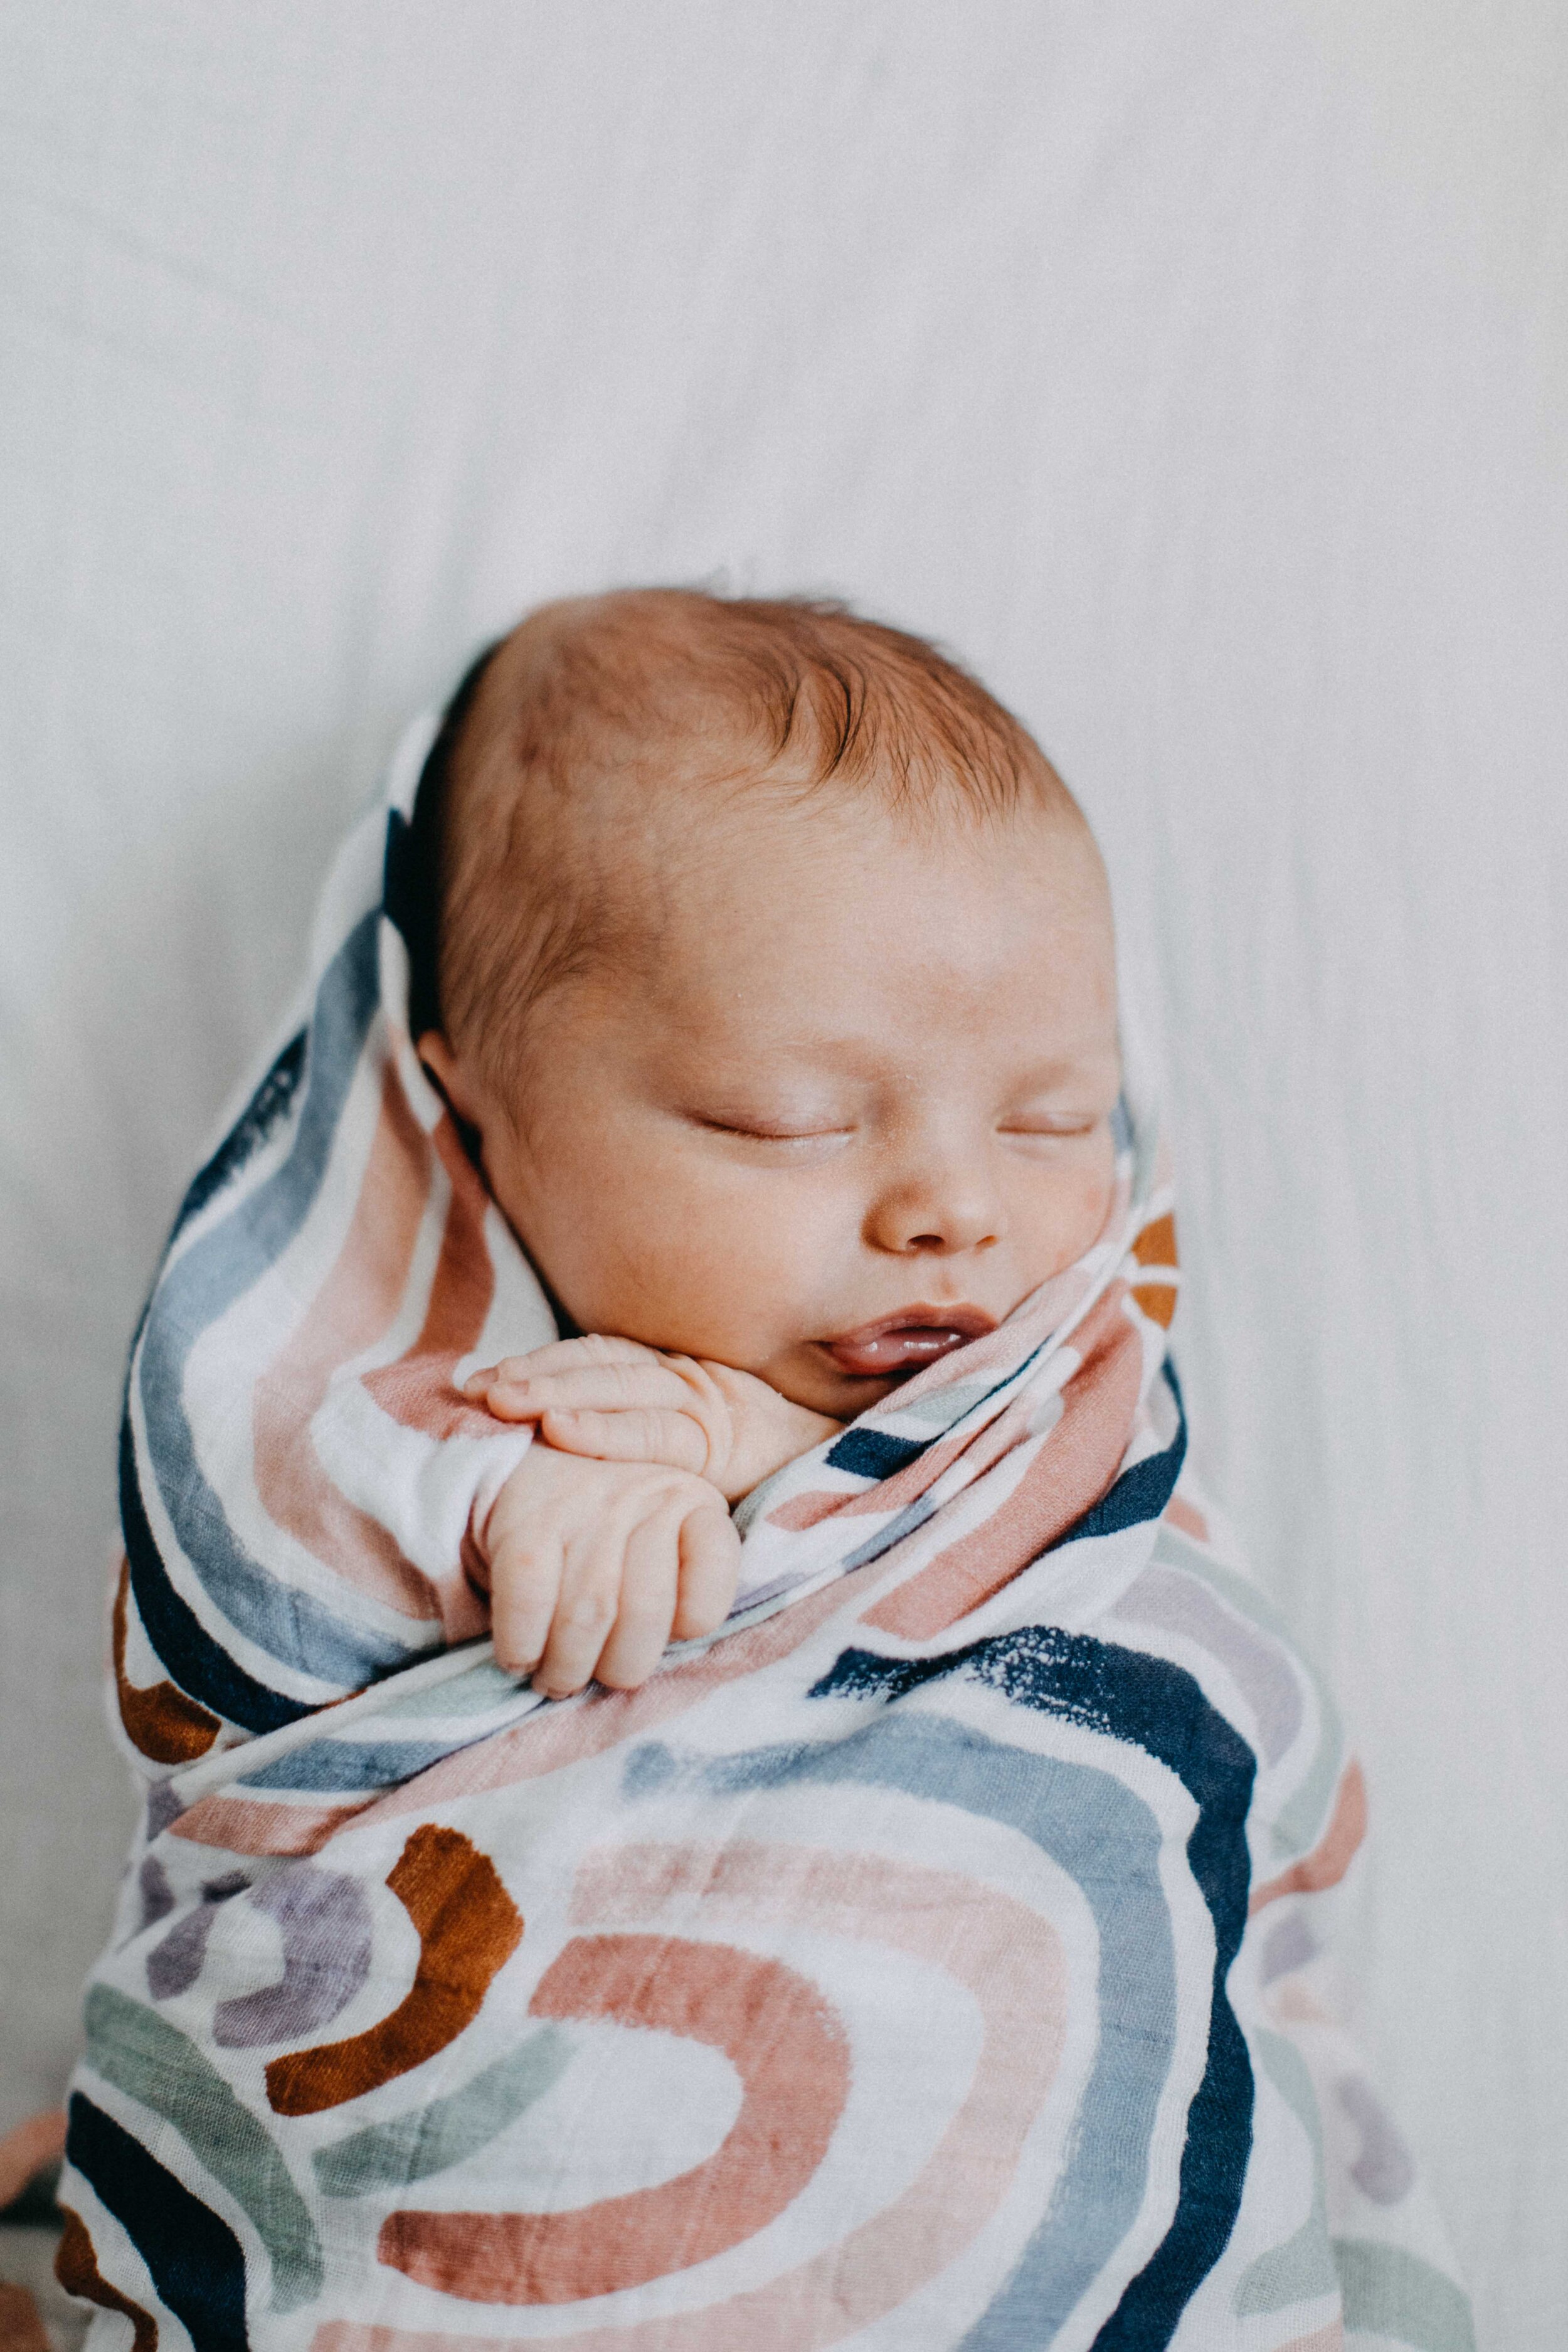 camden-newborn-photographer-lucas-brown-51.jpg